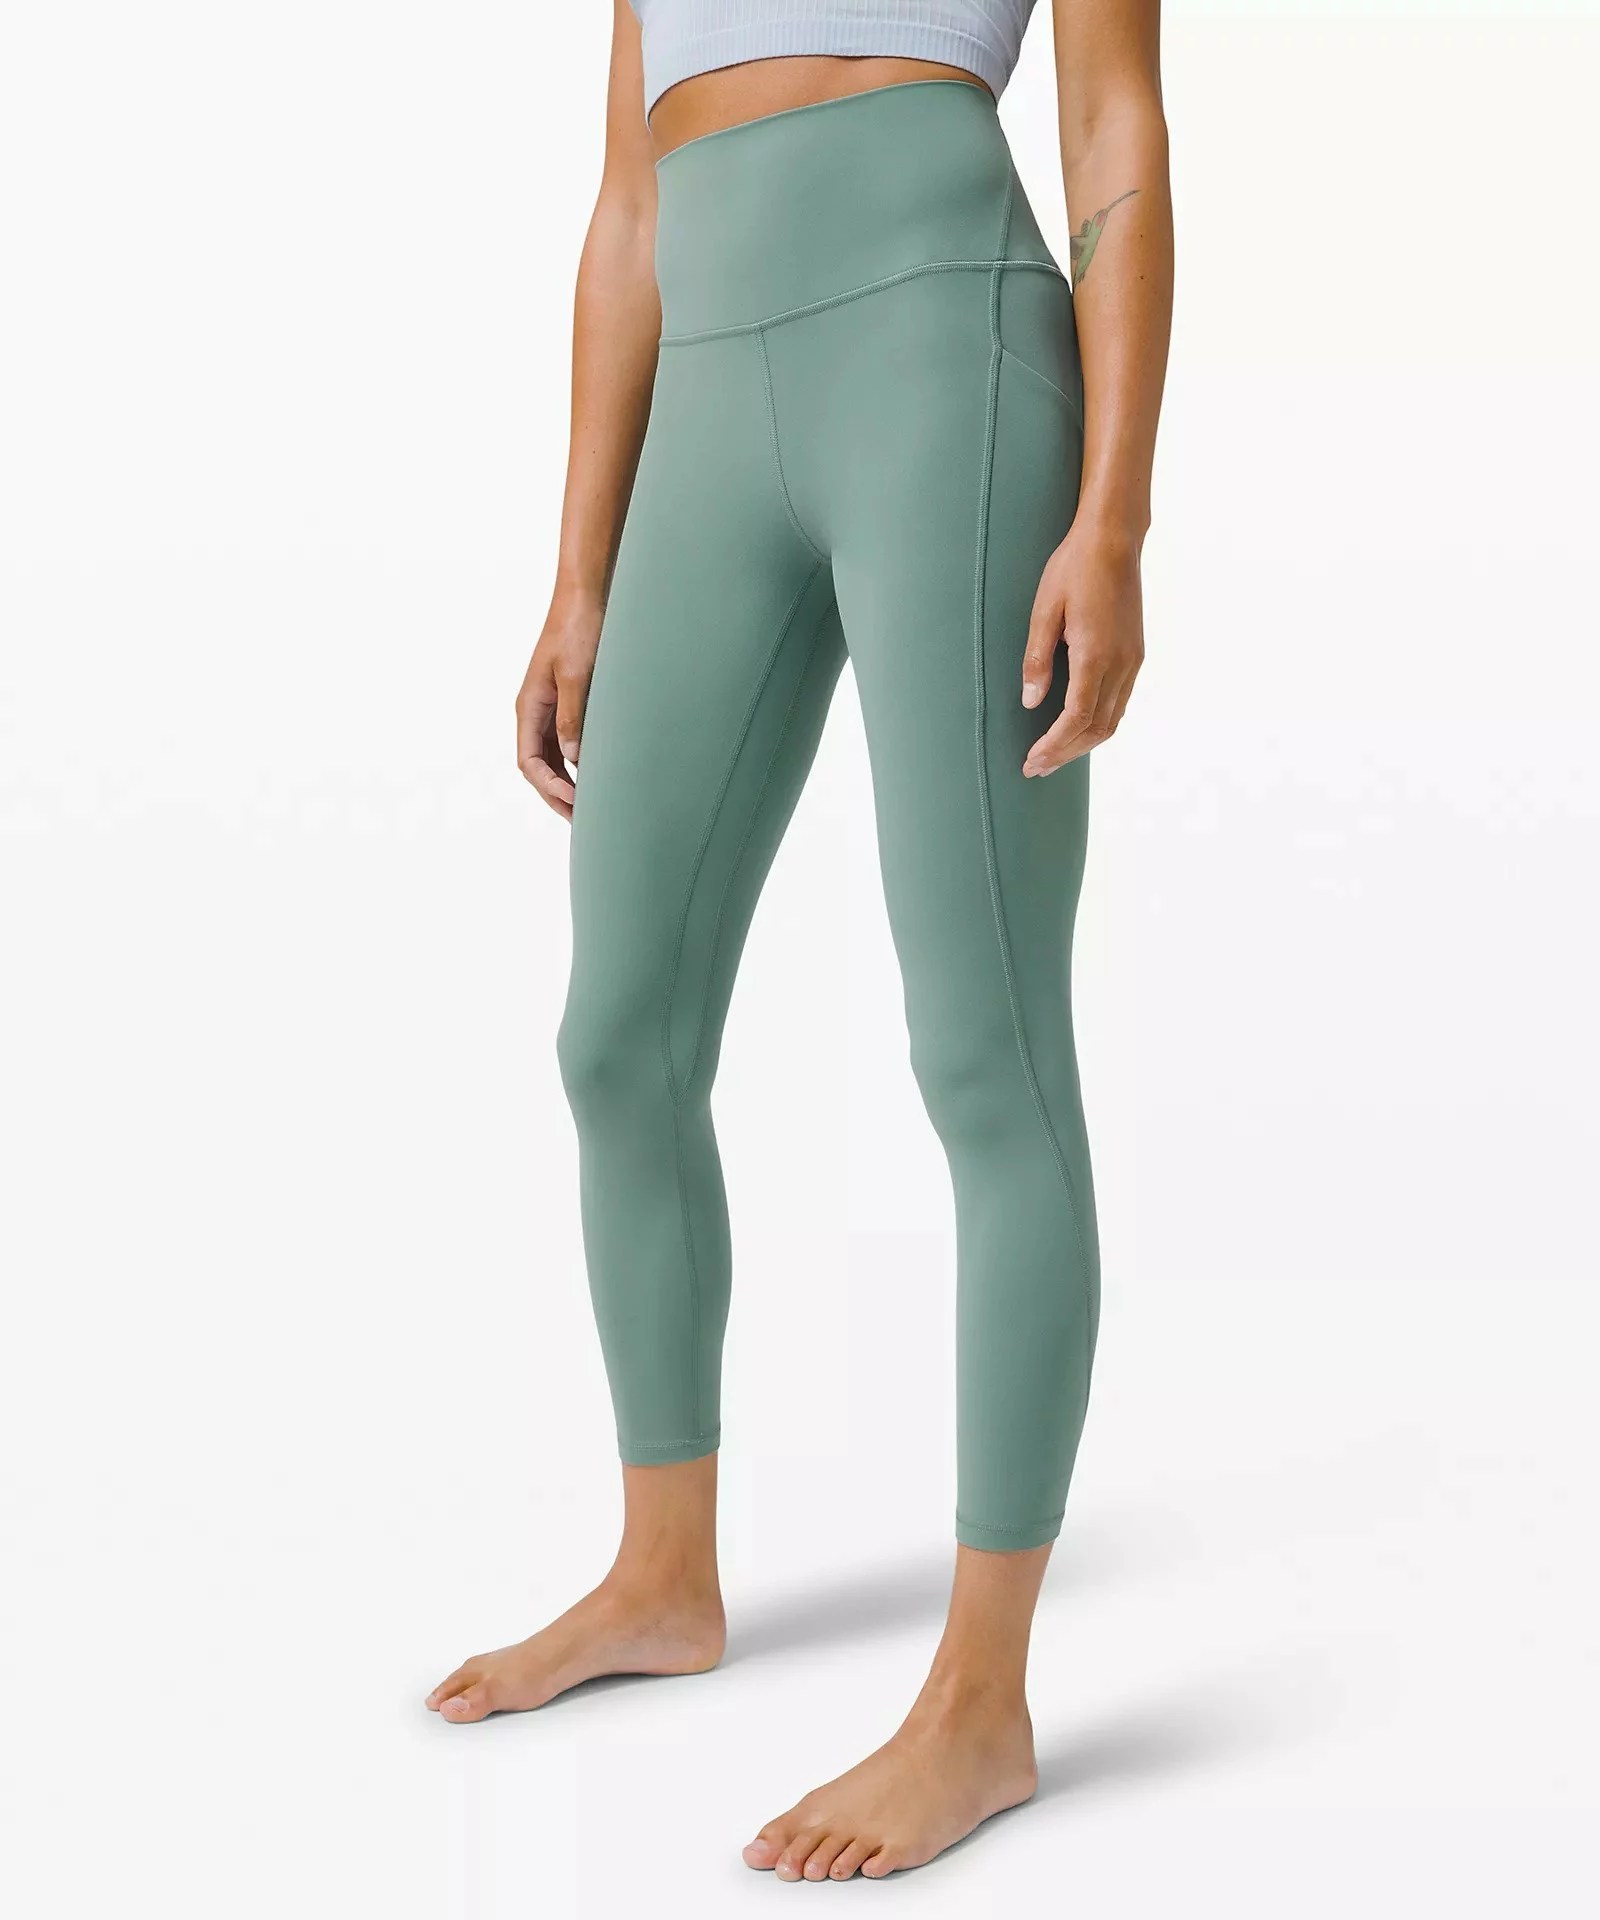 lululemon Align High-Rise Pant, best running leggings